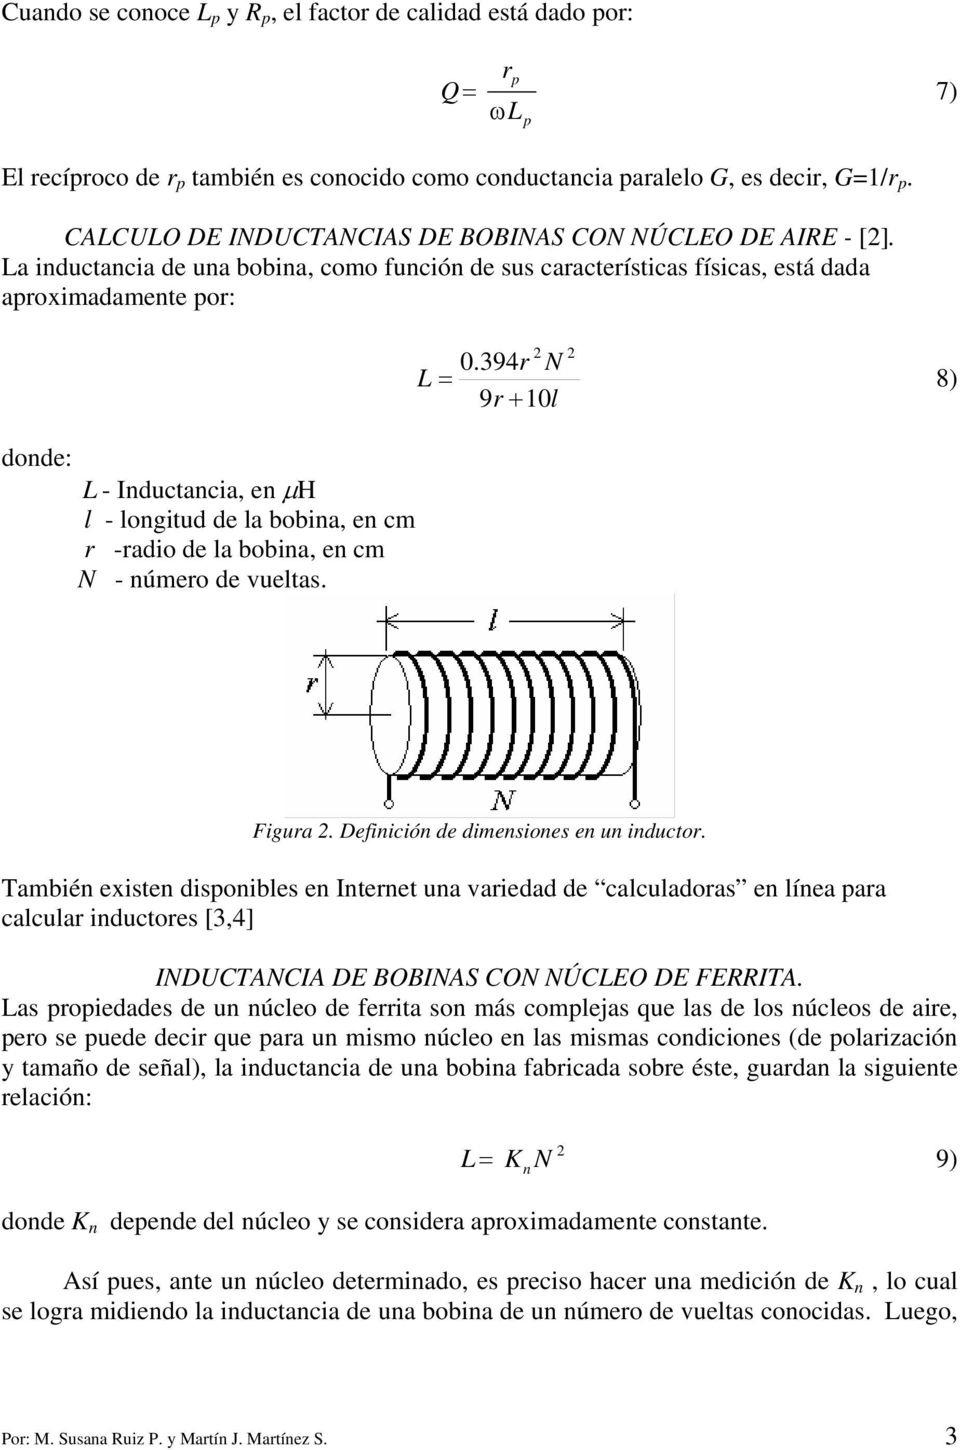 La inductancia de una bobina, como función de u caracterítica fíica, etá dada aroximadamente or: donde: L - Inductancia, en µh l - longitud de la bobina, en cm r -radio de la bobina, en cm N - número